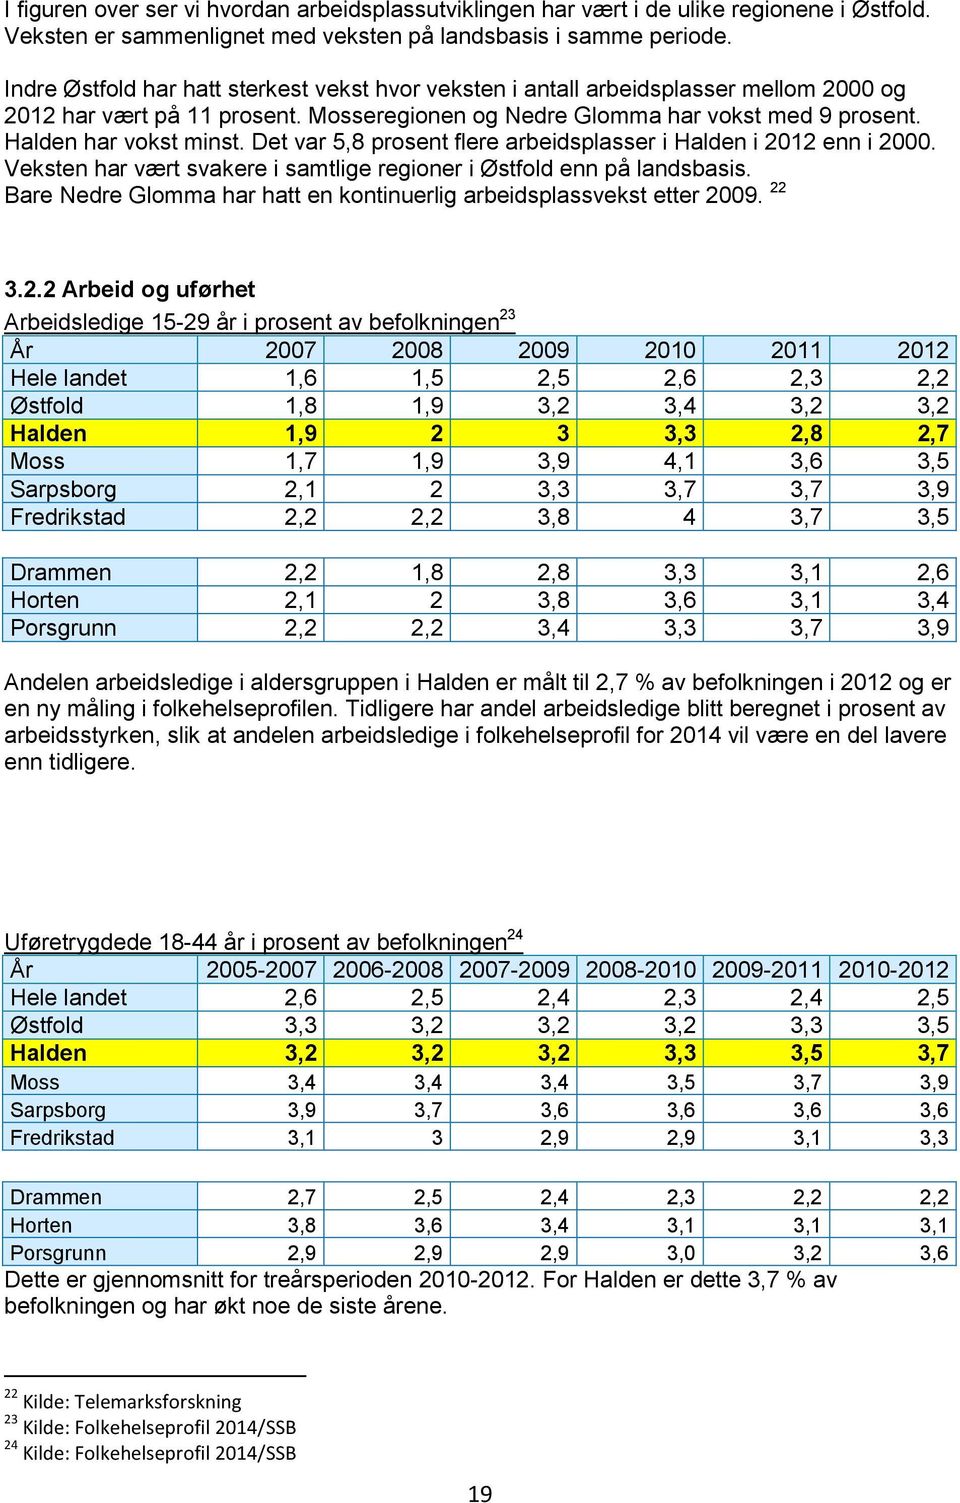 Det var 5,8 prosent flere arbeidsplasser i Halden i 2012 enn i 2000. Veksten har vært svakere i samtlige regioner i Østfold enn på landsbasis.